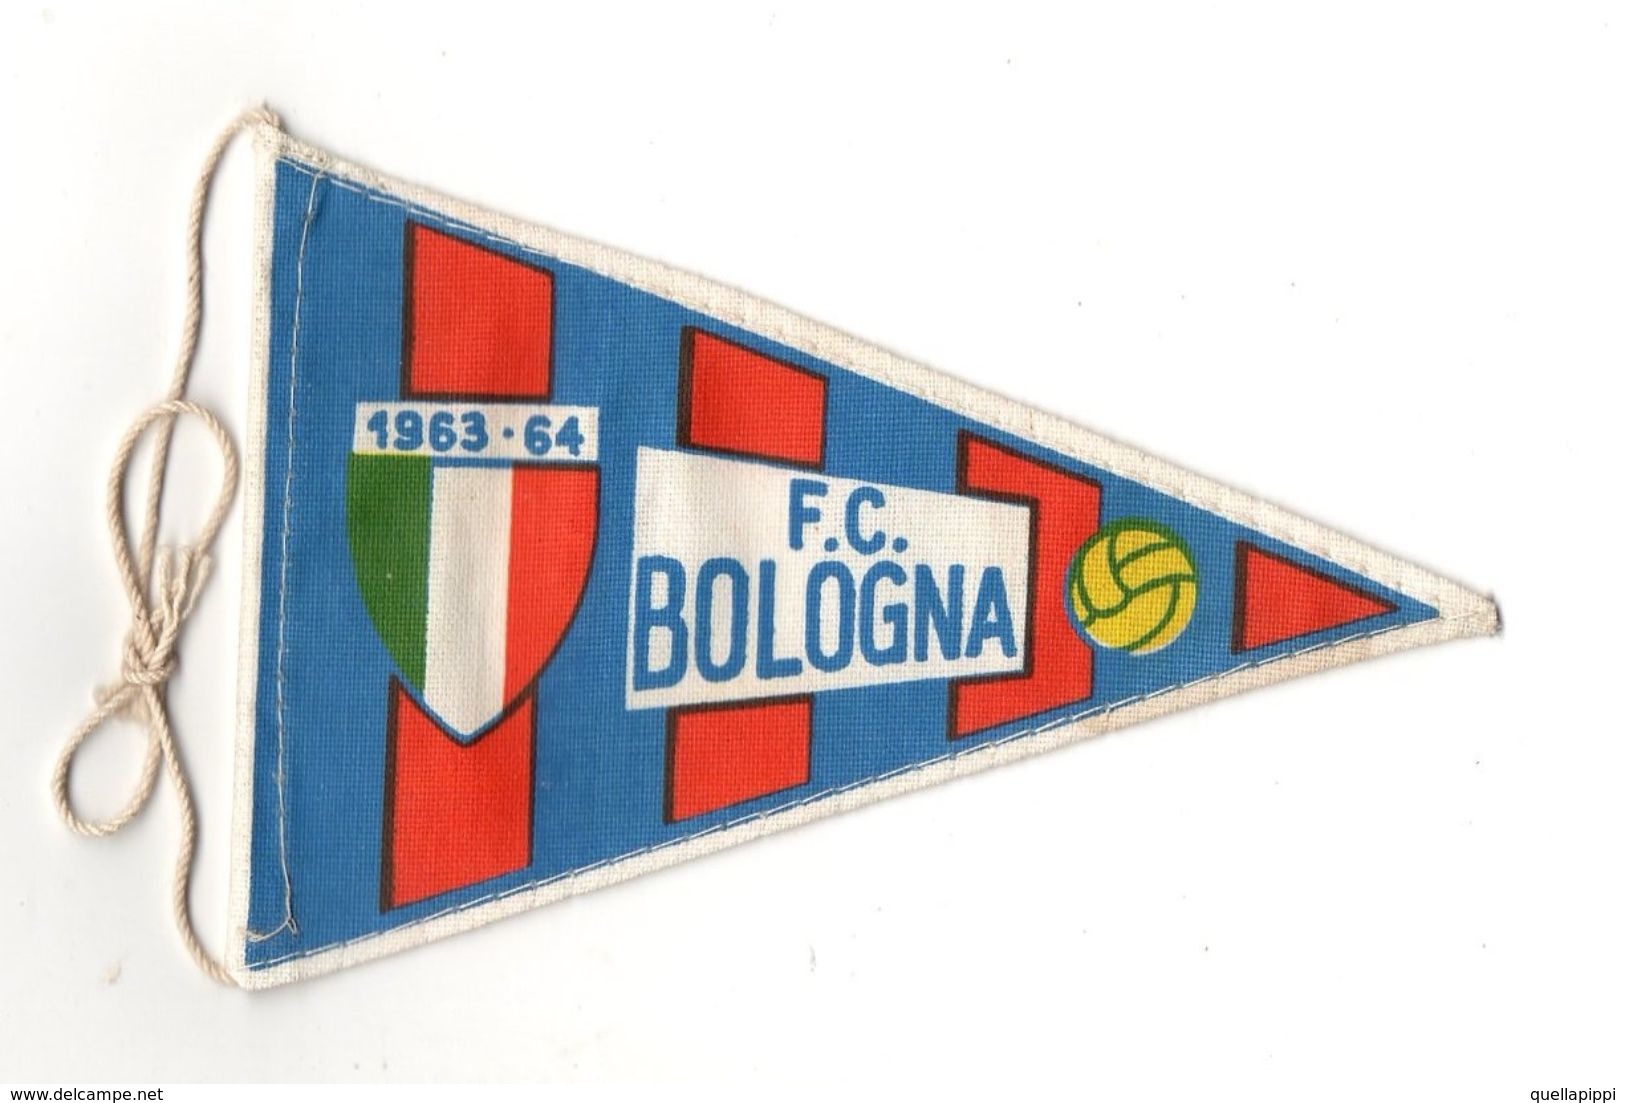 07130 "BOLOGNA F.C. FOOTBALL CLUB - BANDIERINA BIFRONTE IN STOFFA CON LEGACCI" ANNI 1963/1964 ORIG. - Bekleidung, Souvenirs Und Sonstige